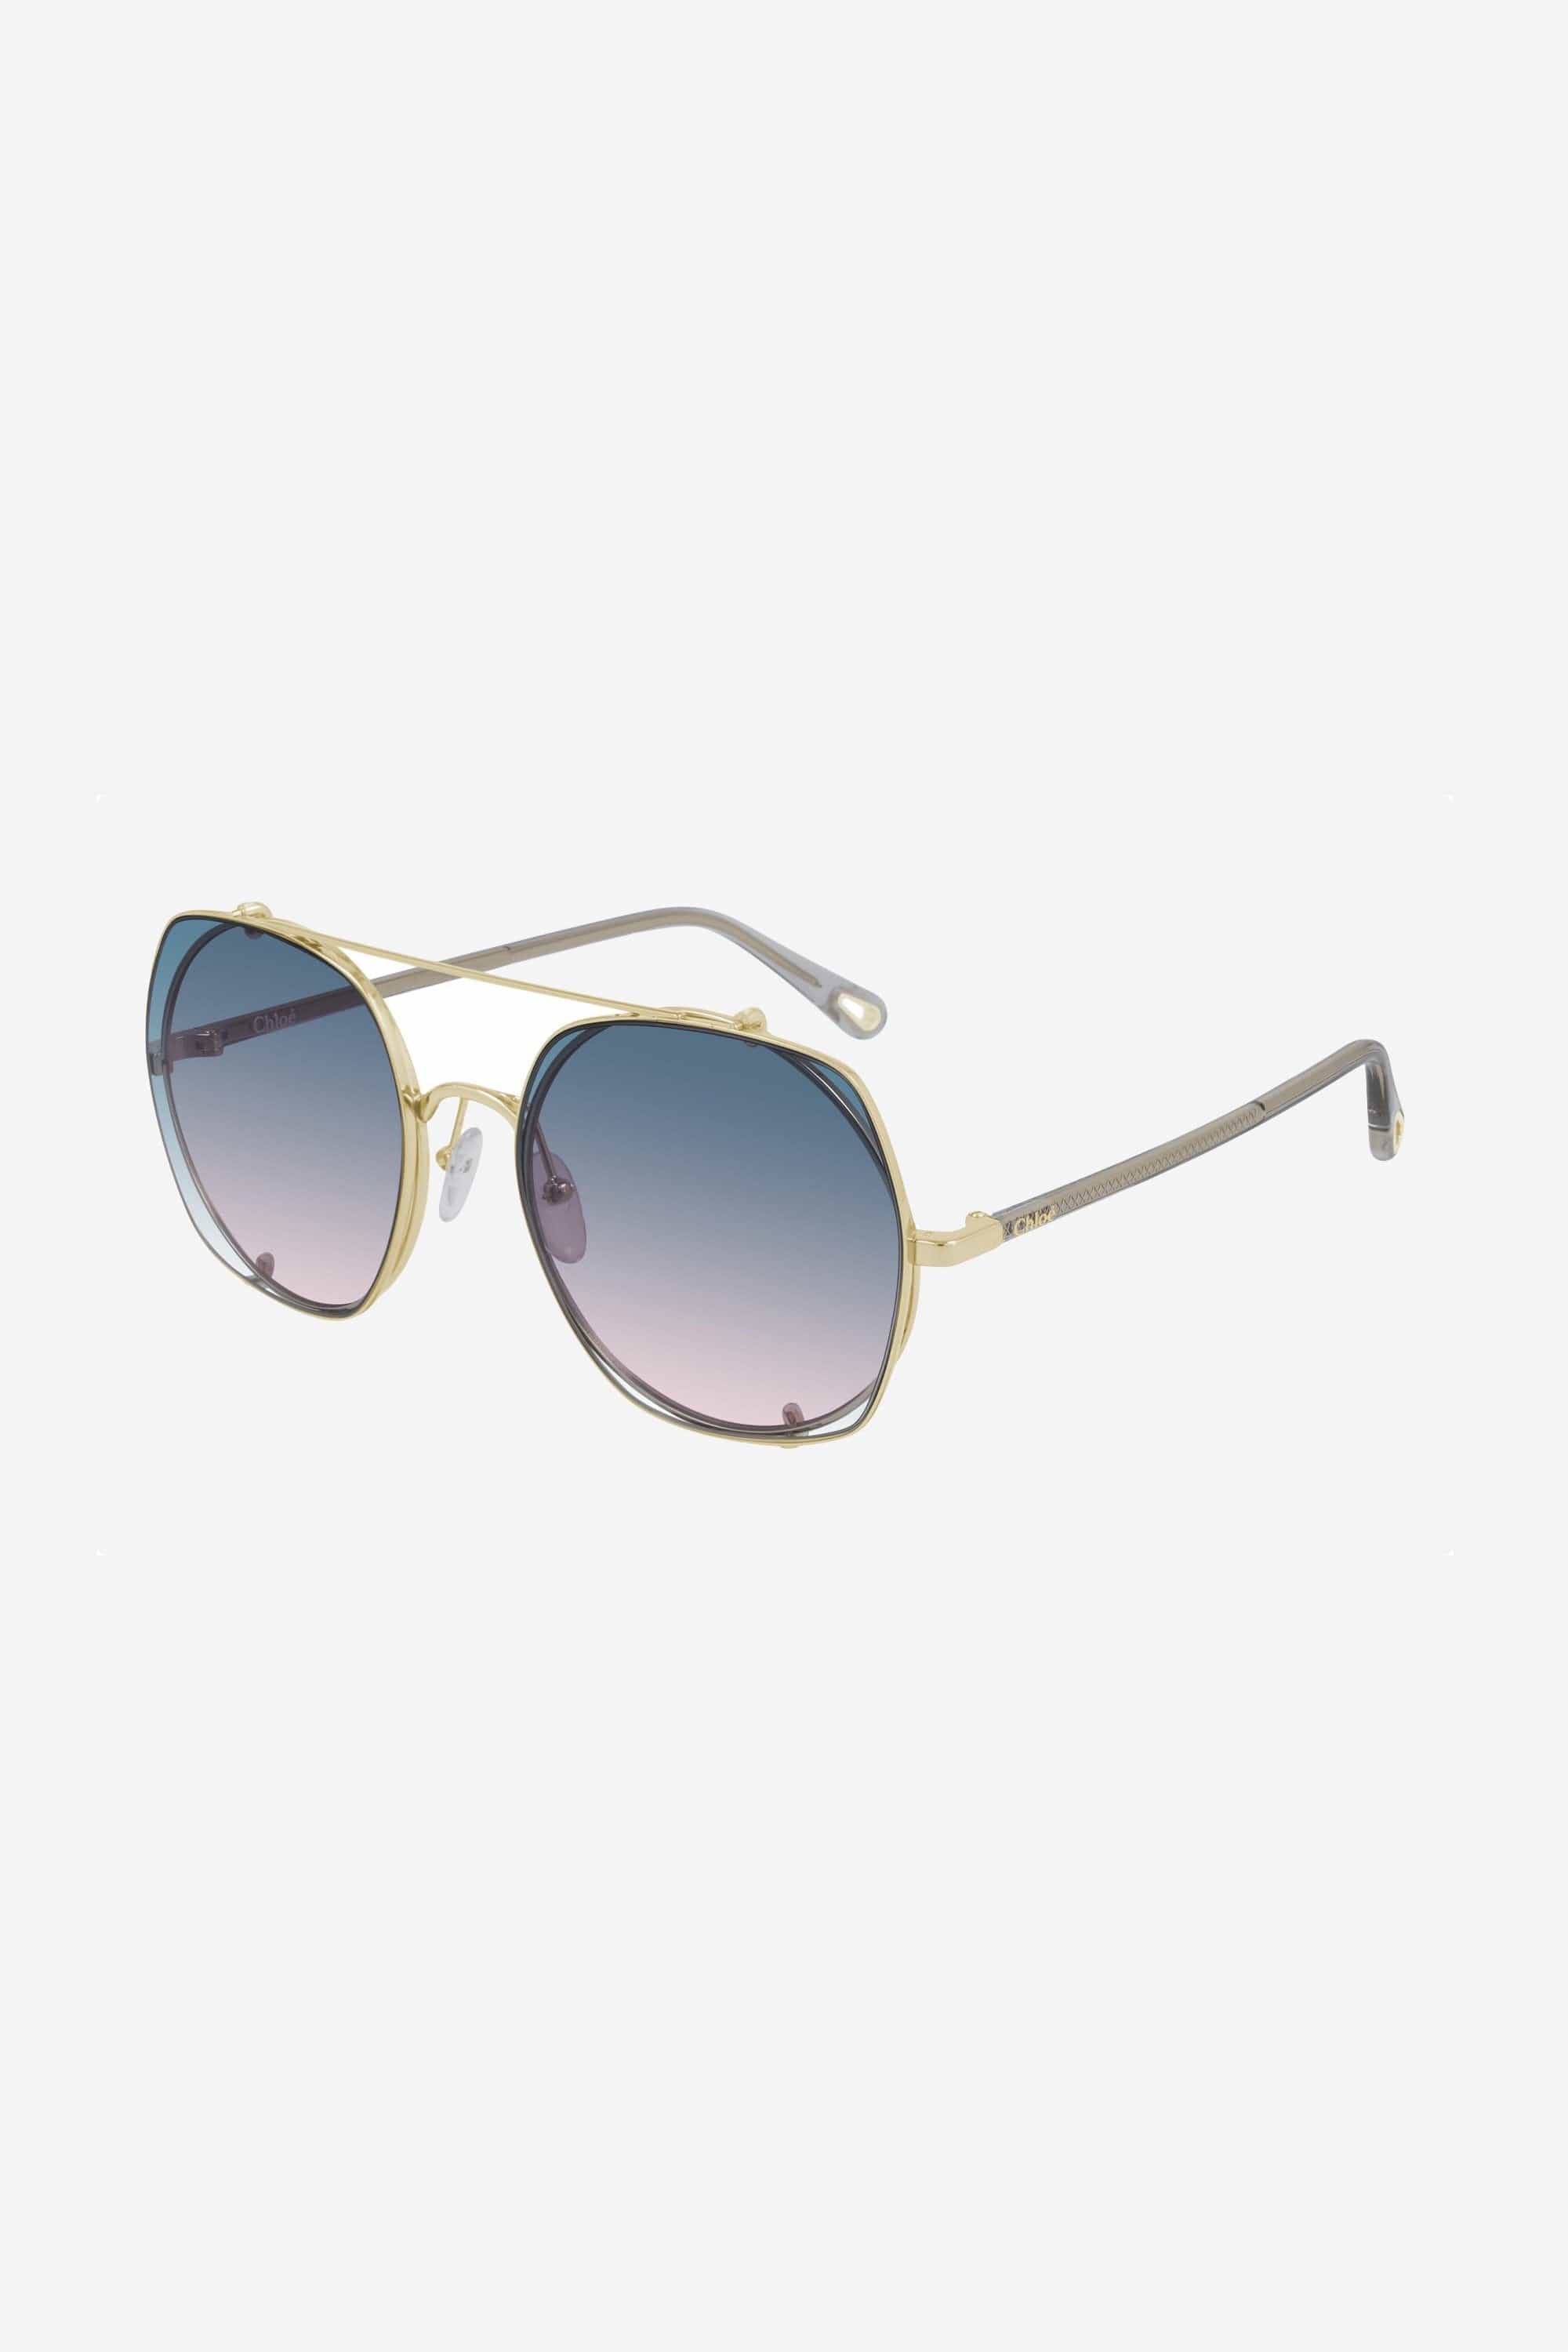 Chloe clip on grey purple blue sunglasses - Eyewear Club